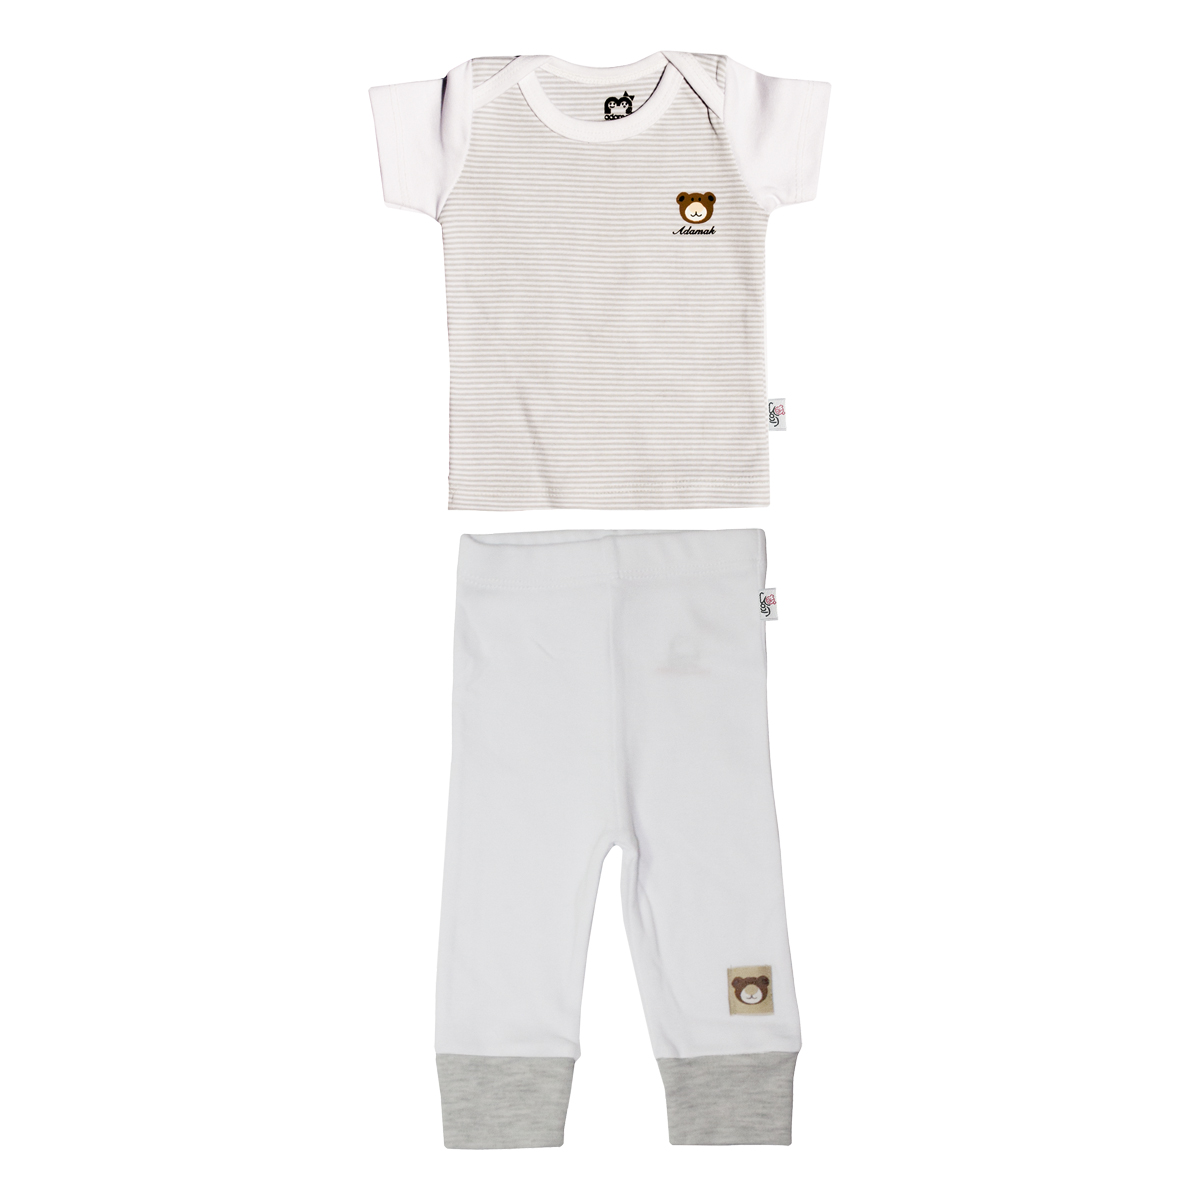 ست تی شرت و شلوار نوزادی آدمک طرح راه راه کد 2-152088 رنگ طوسی